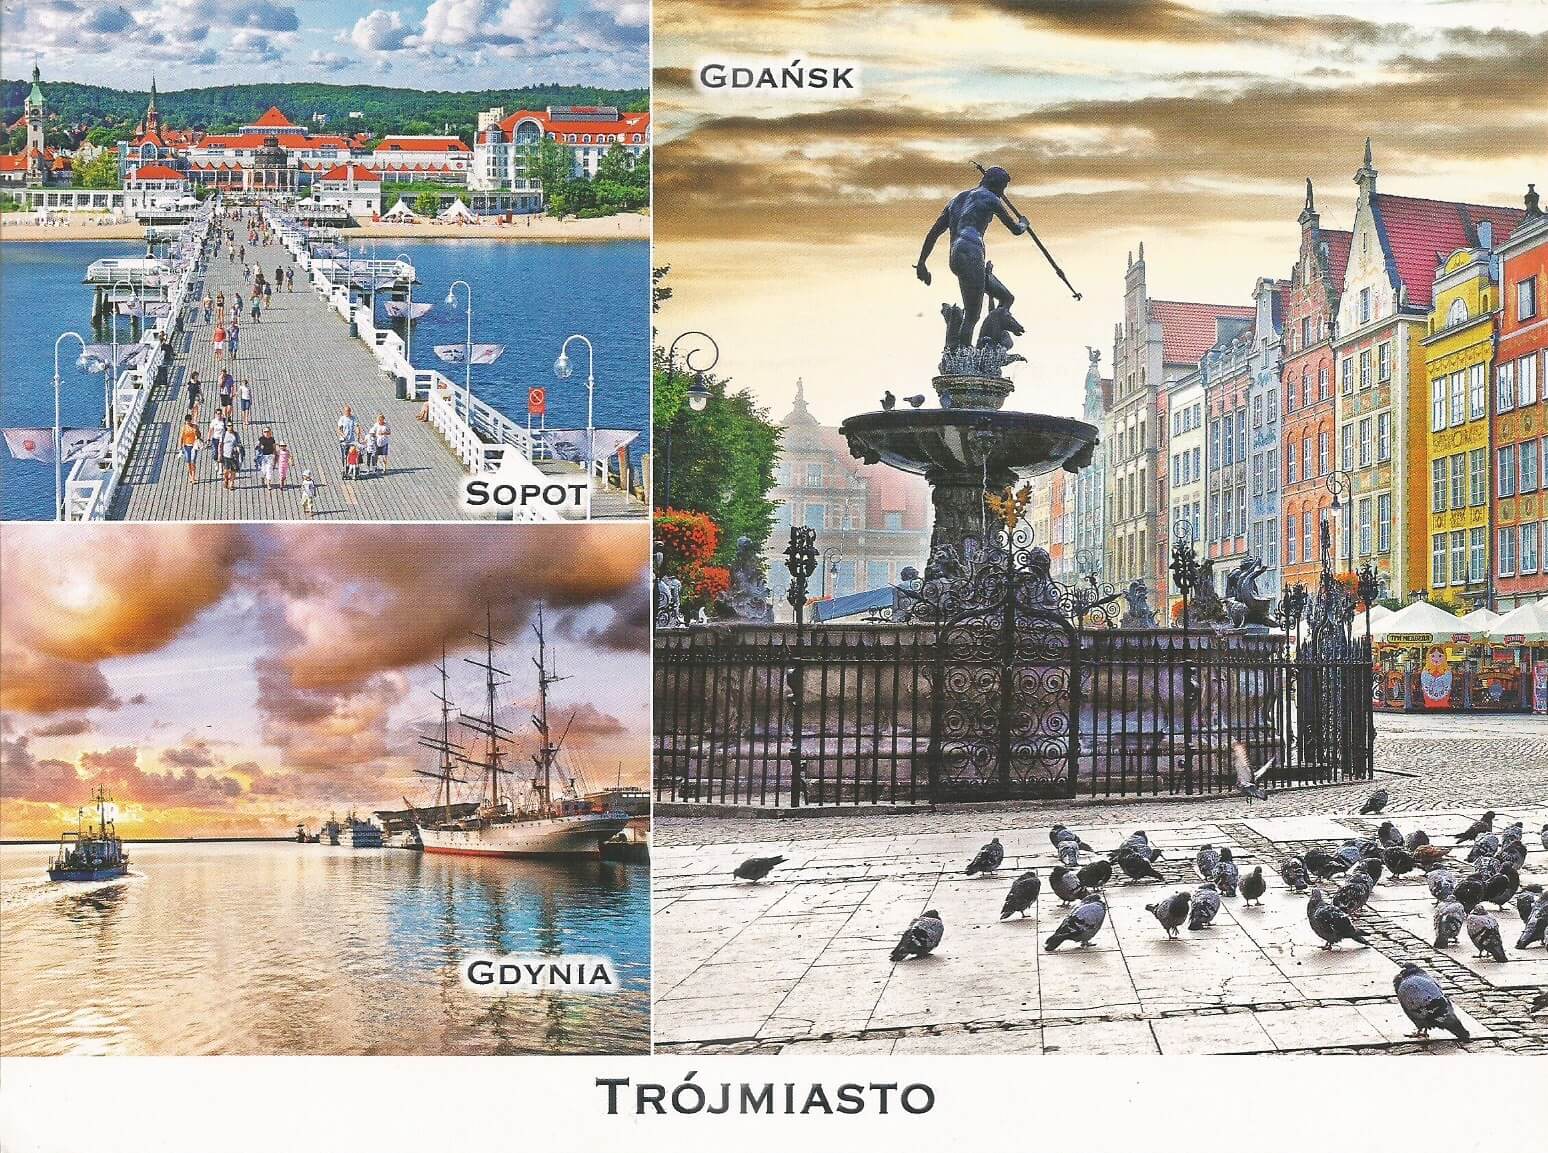 25 Ocak 2020'de Polonya'dan. Tricity(Trojmiasto, üç şehir) olarak adlandırılan Gdansk, Sopot ve Gdynia görülüyor.